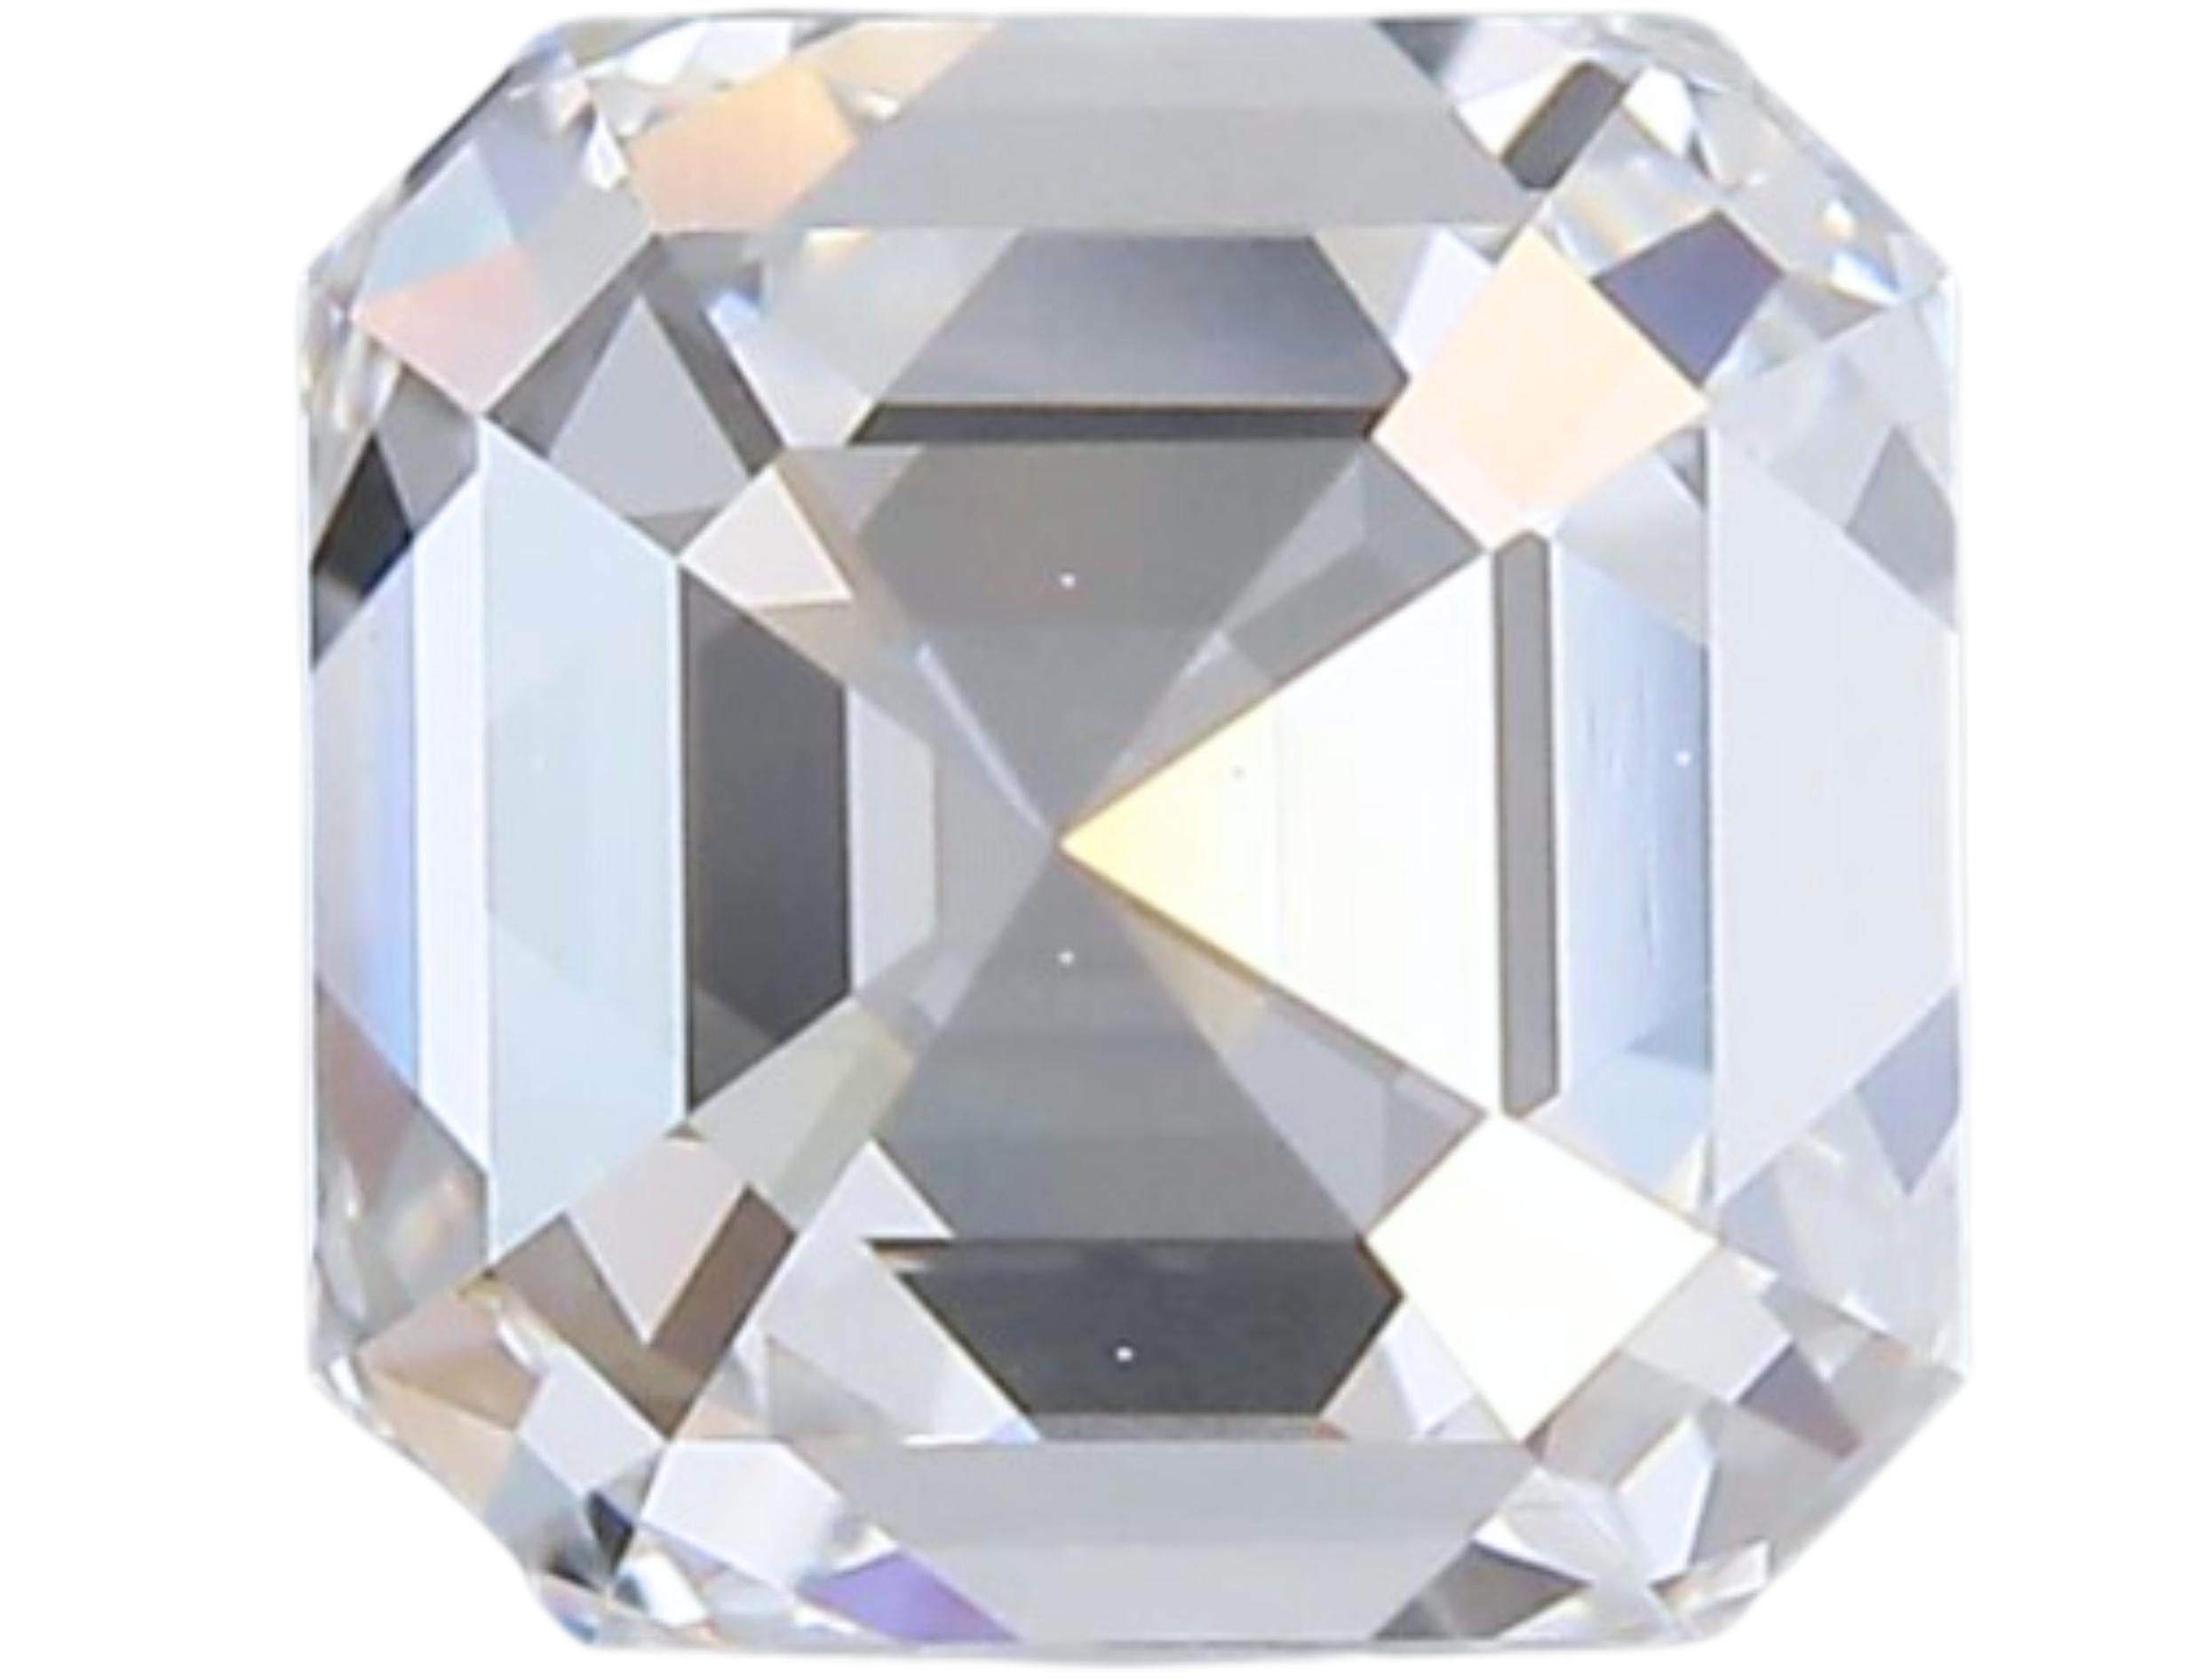 1pc Dazzling Natural cut Emerald diamond in a 1 carat 5